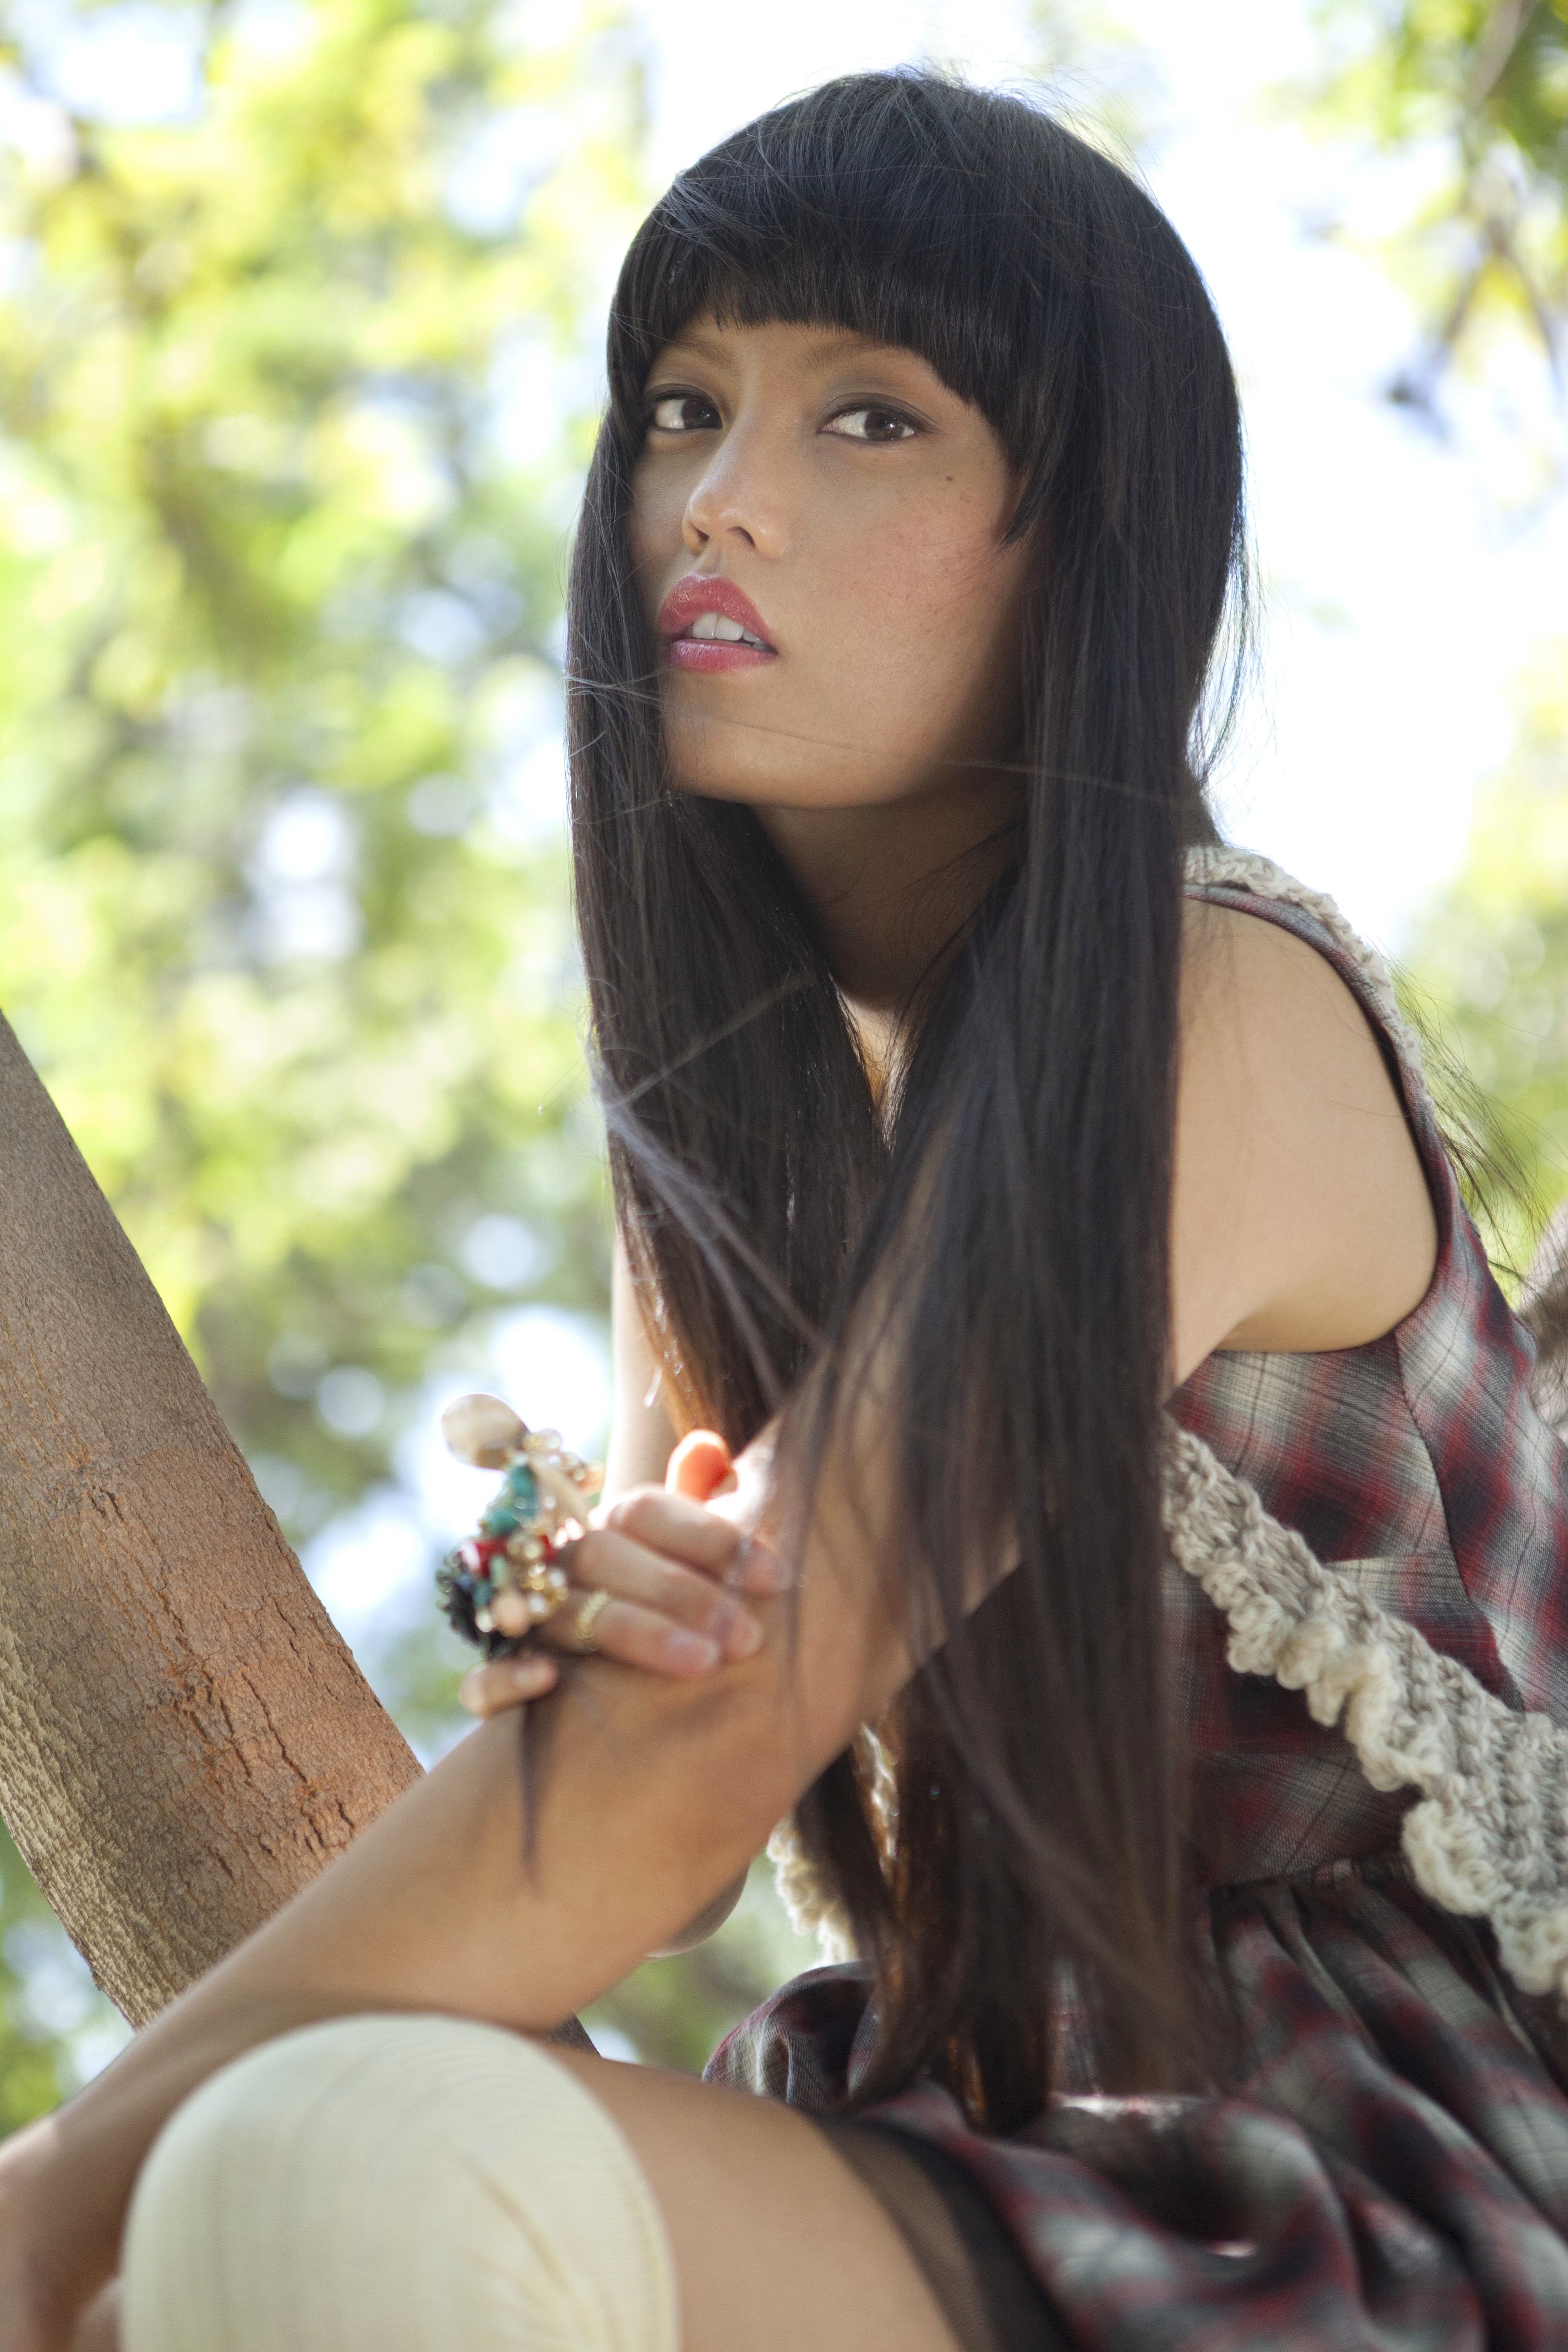 Hana Mae Lee in Teen Vogue September 2012